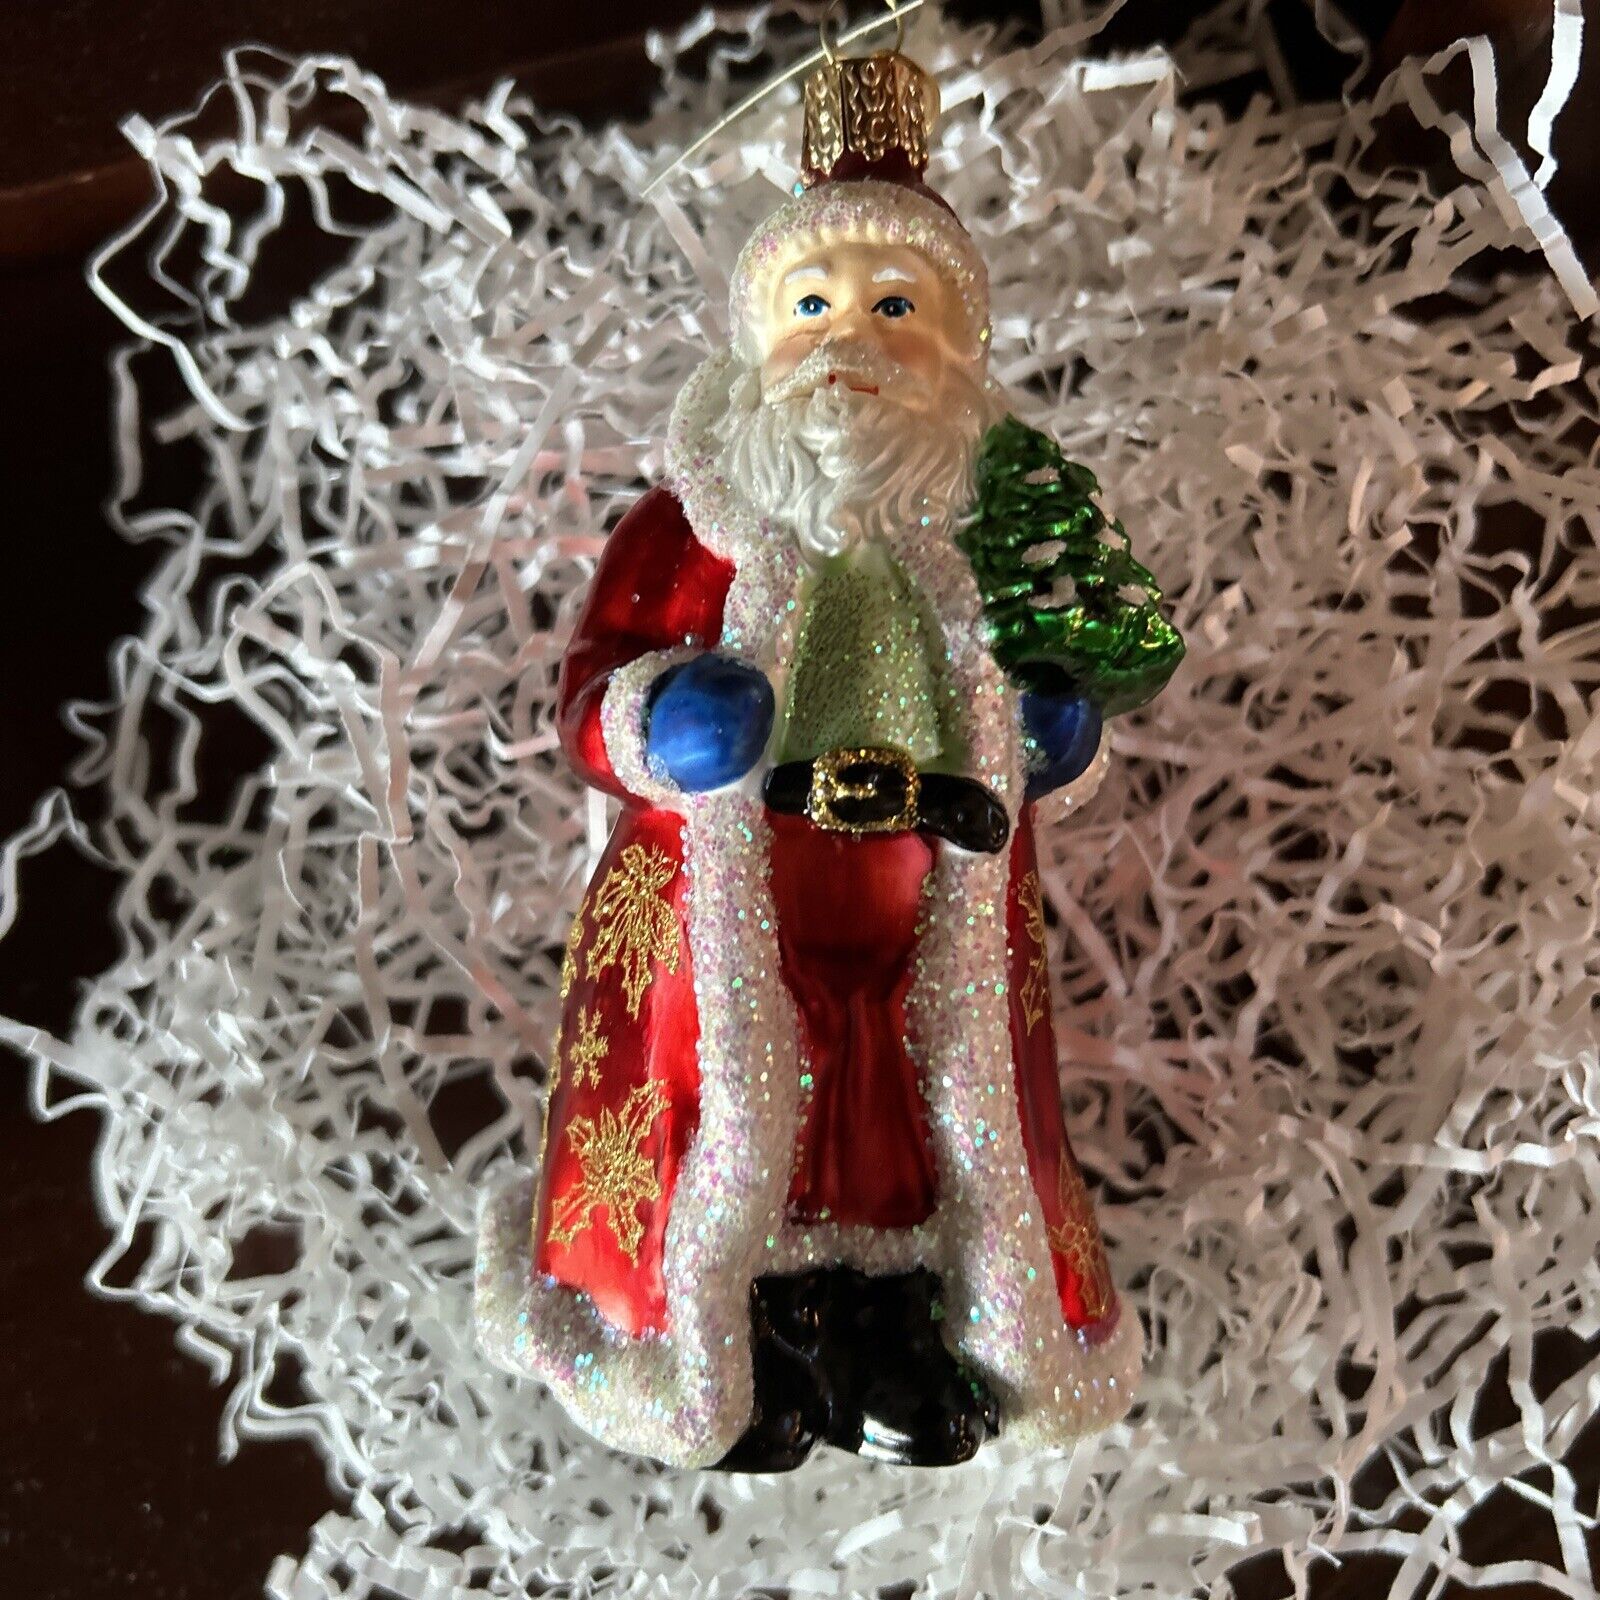 Merck Family’s OWC Glistening Santa  5”x2.5”x2.5” #40249 NEW Tags